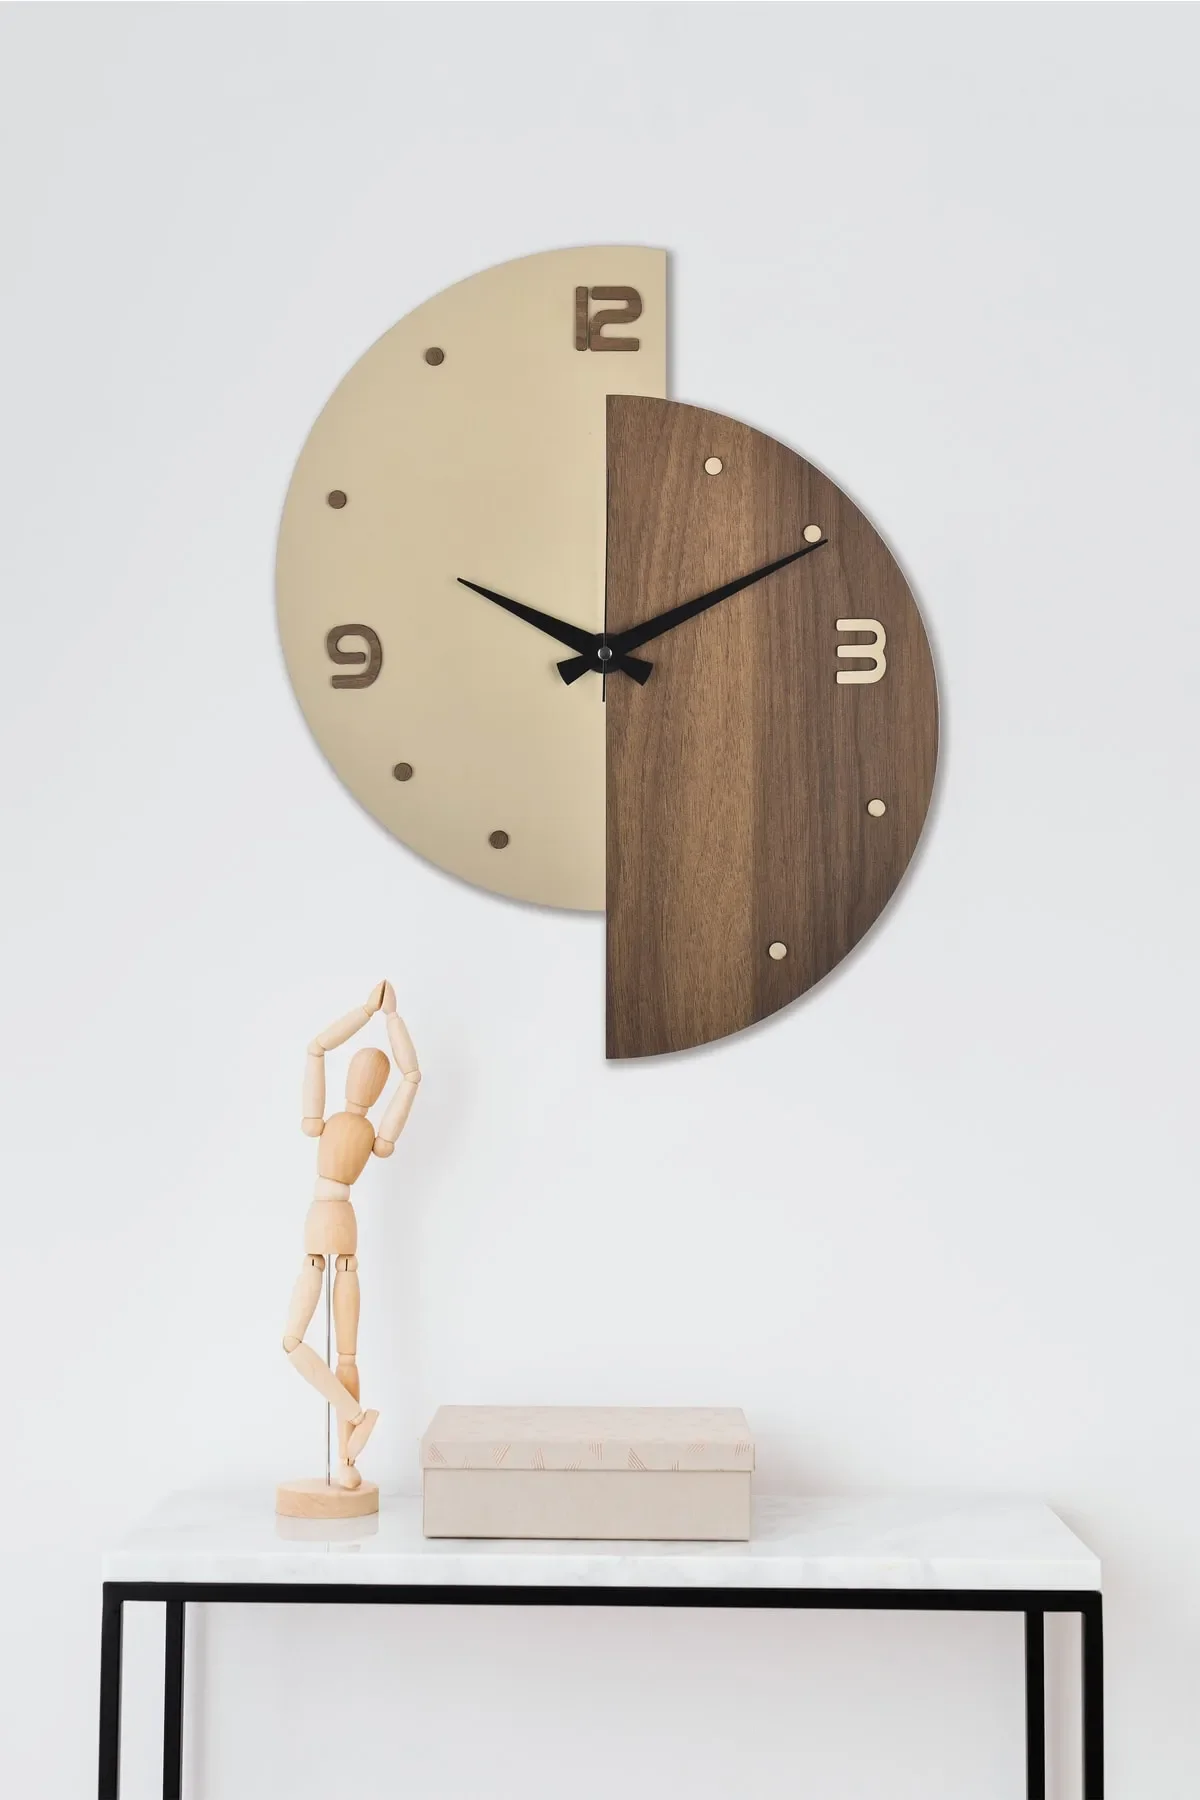 

Декоративные деревянные настенные часы кремового ореха разных цветов 50x40 см, домашние и комнатные декоративные настенные часы Diana с бесшумным механизмом клеща